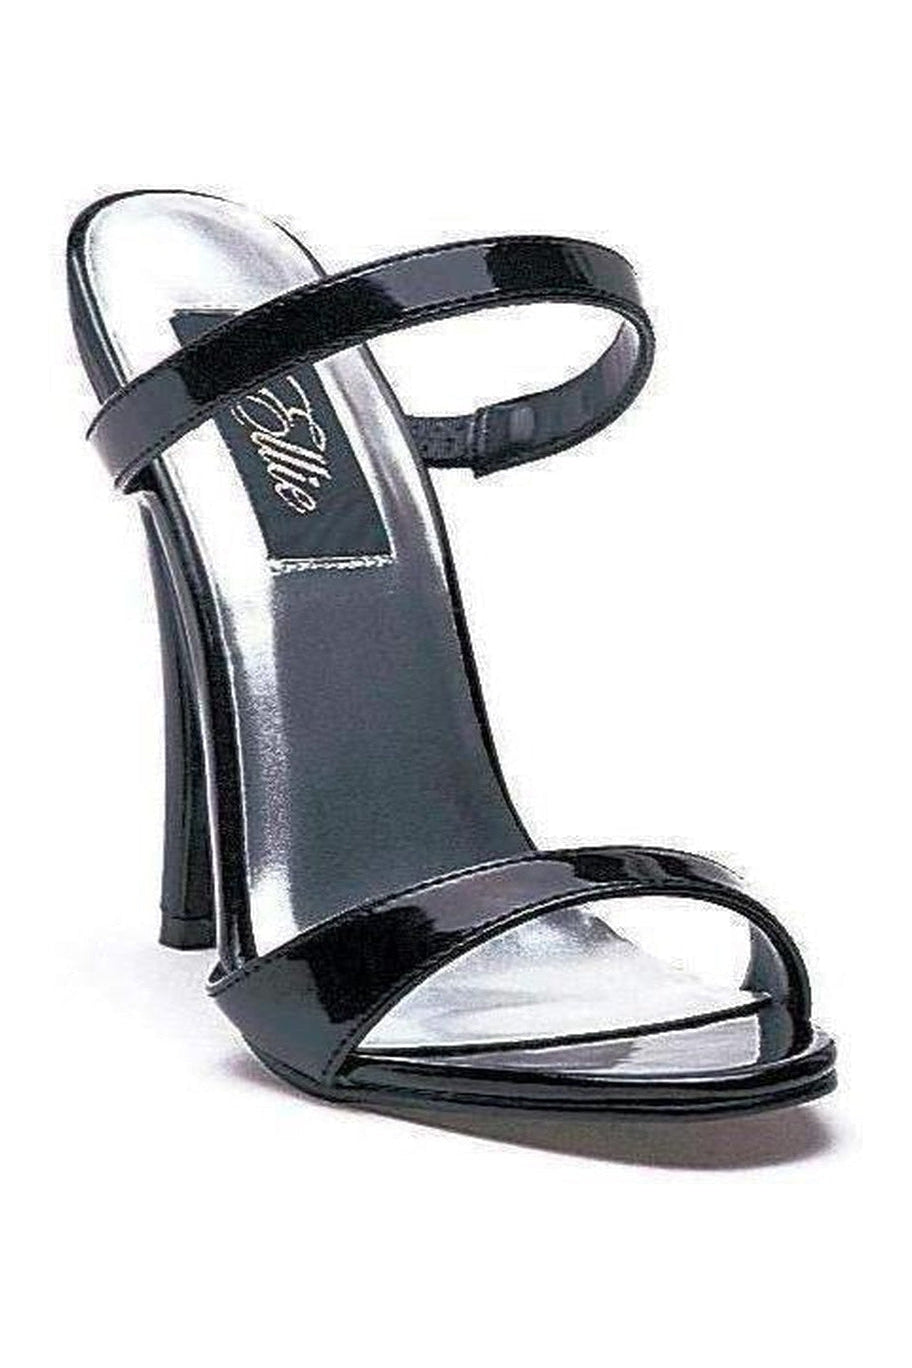 510-MAGGIE Sandal | Black Patent-Ellie Shoes-Black-Sandals-SEXYSHOES.COM